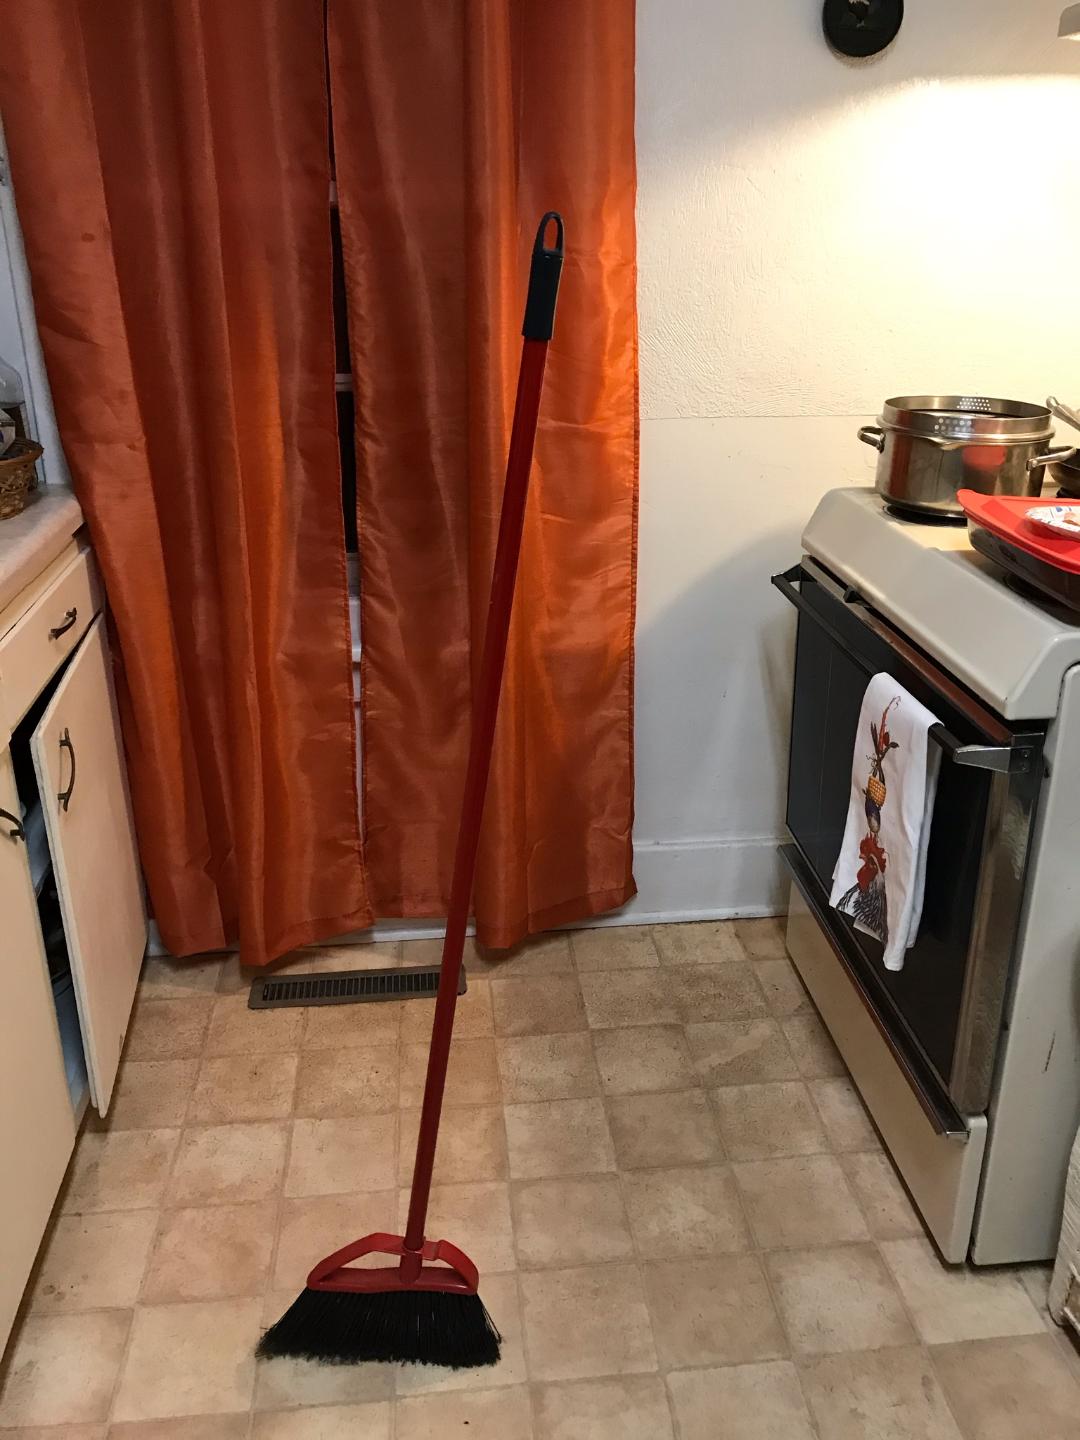 broom standing up